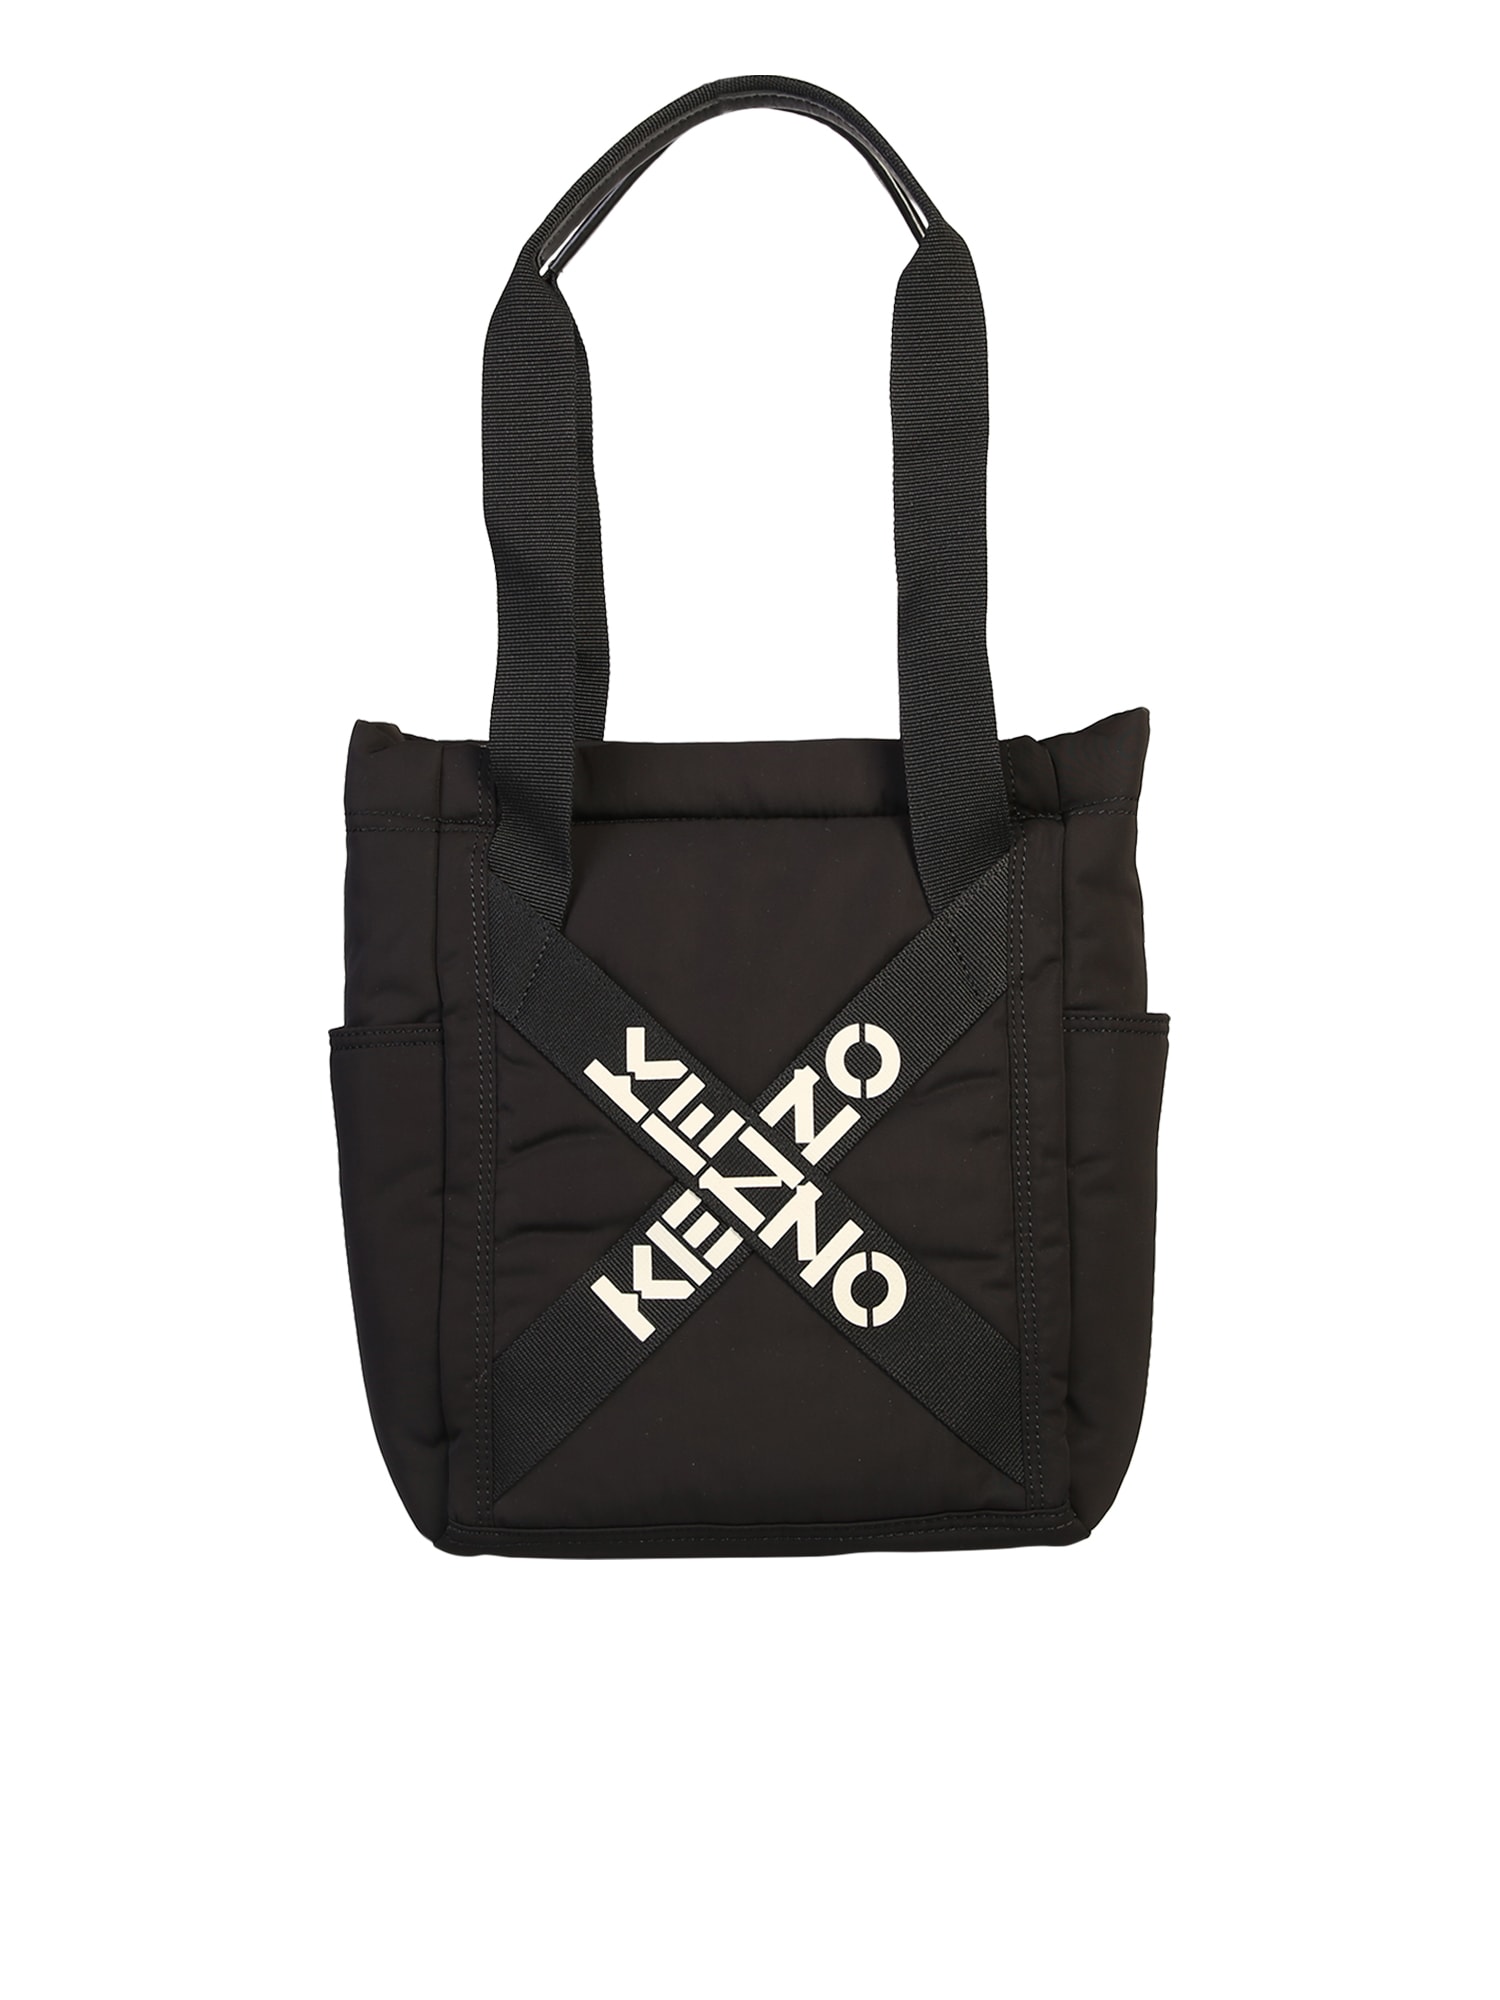 Kenzo Branded Tote Bag